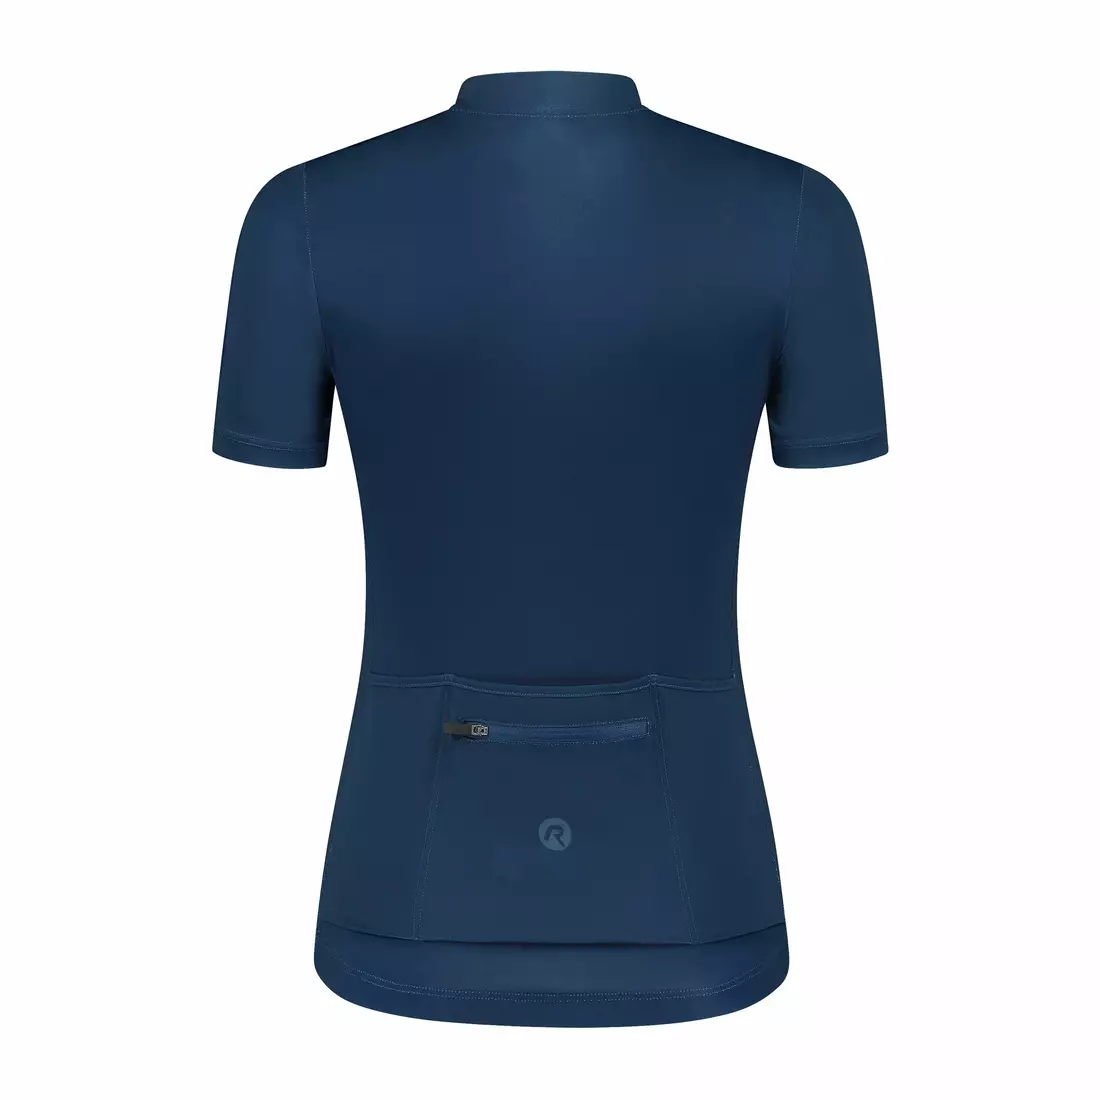 Rogelli CORE women's cycling jersey, dark blue